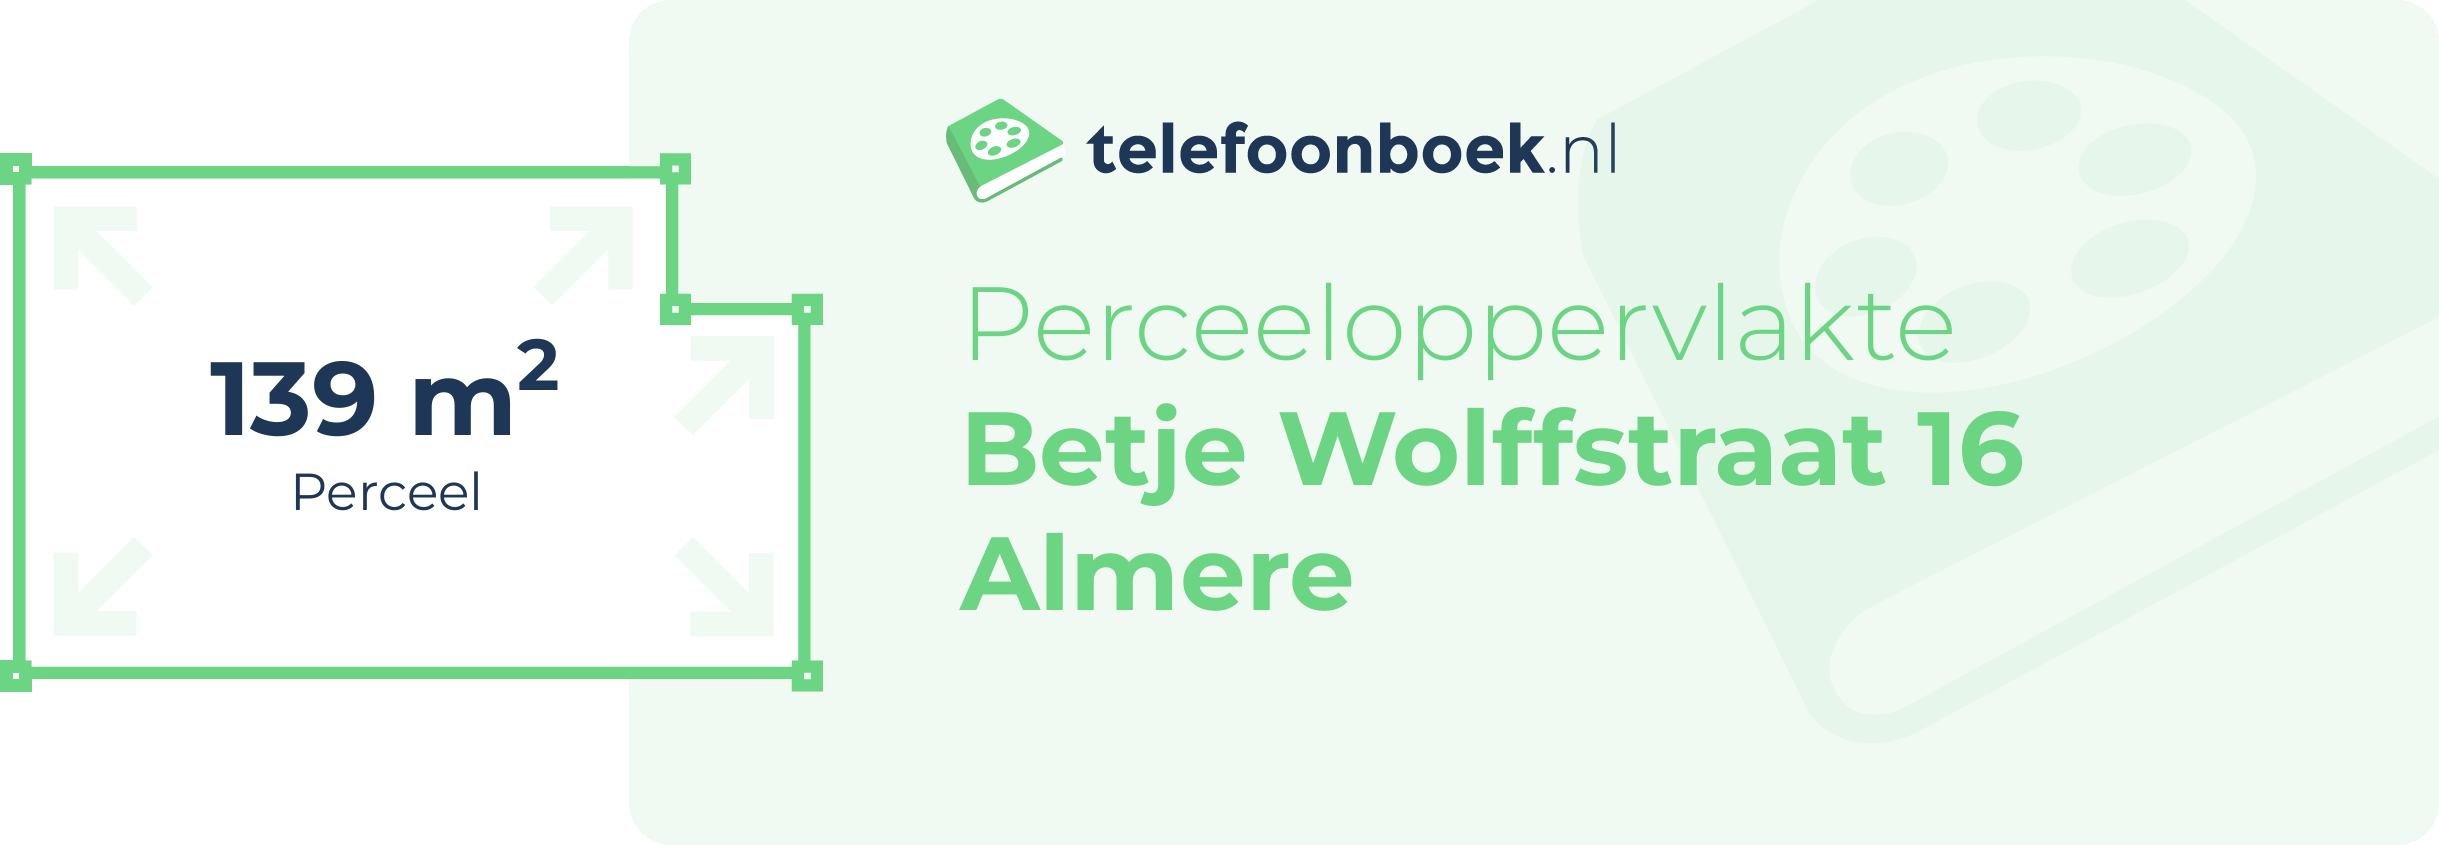 Perceeloppervlakte Betje Wolffstraat 16 Almere